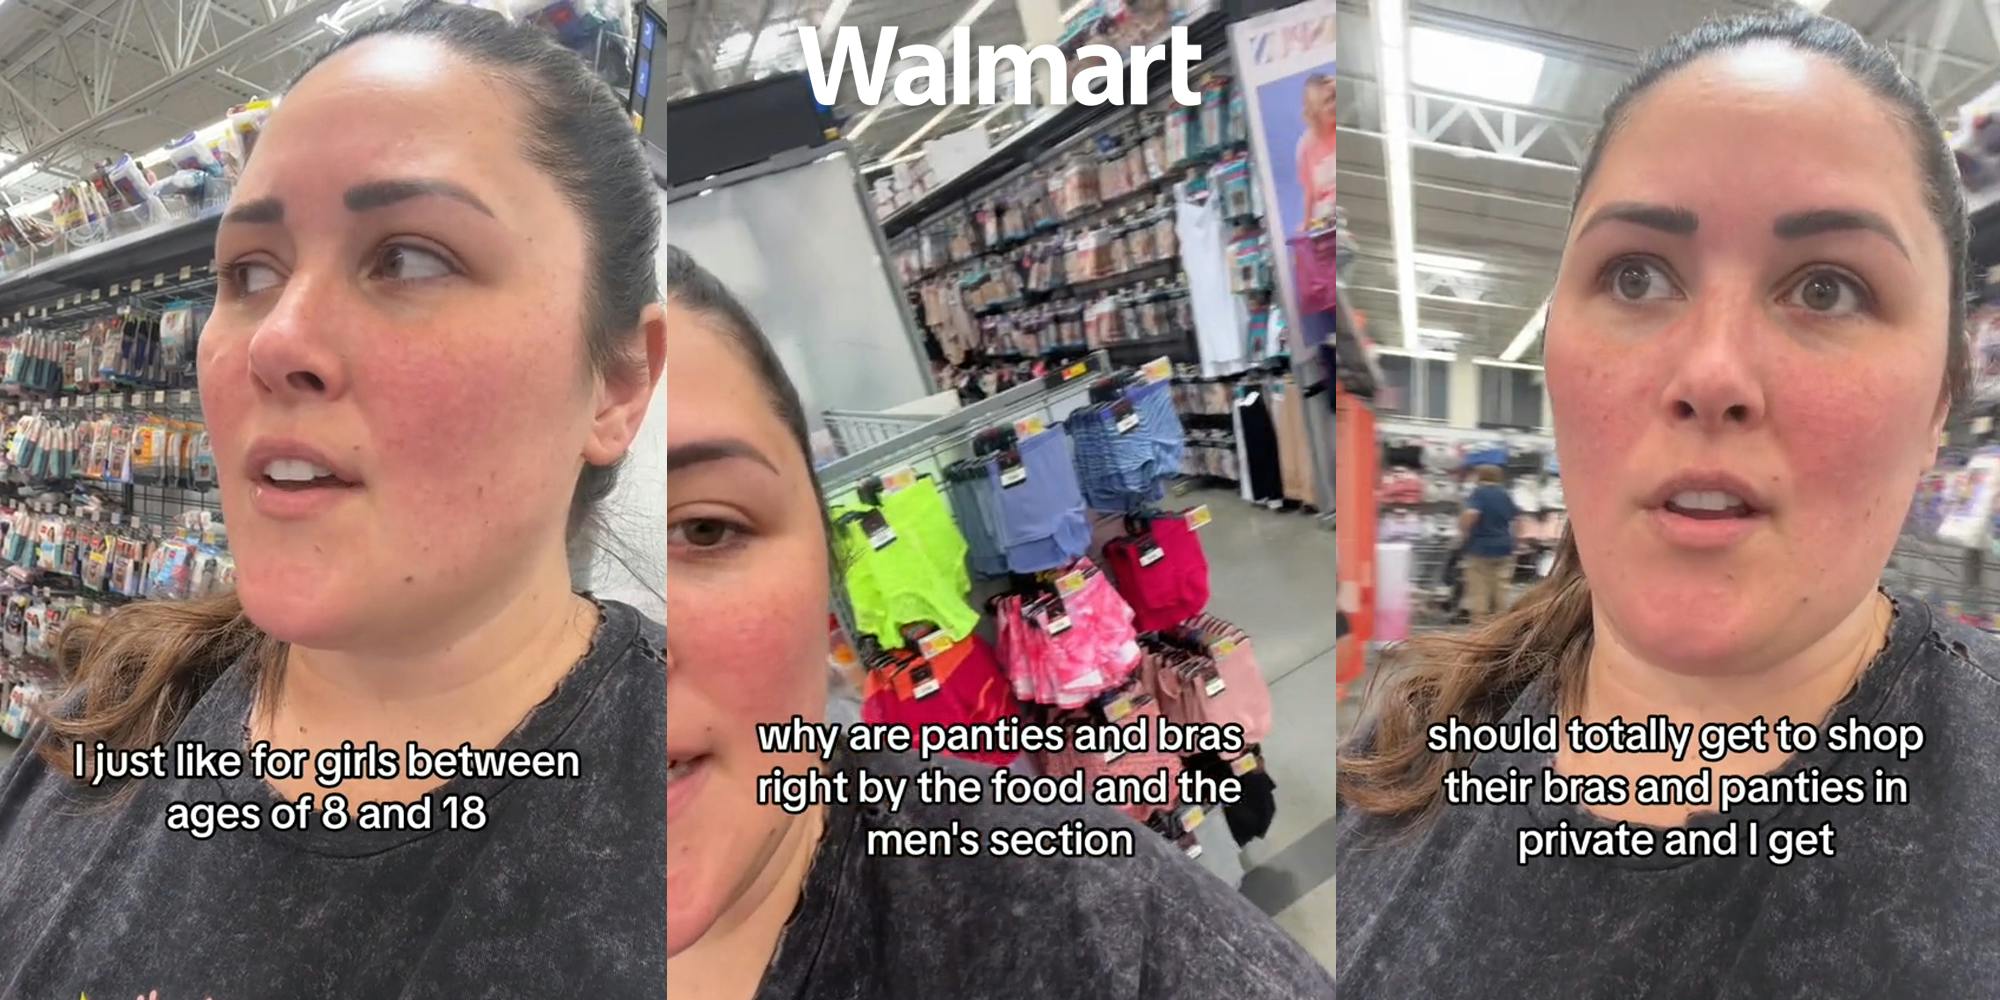 Customer Slams Walmart for Putting Girls’ Bras Near Men's Section